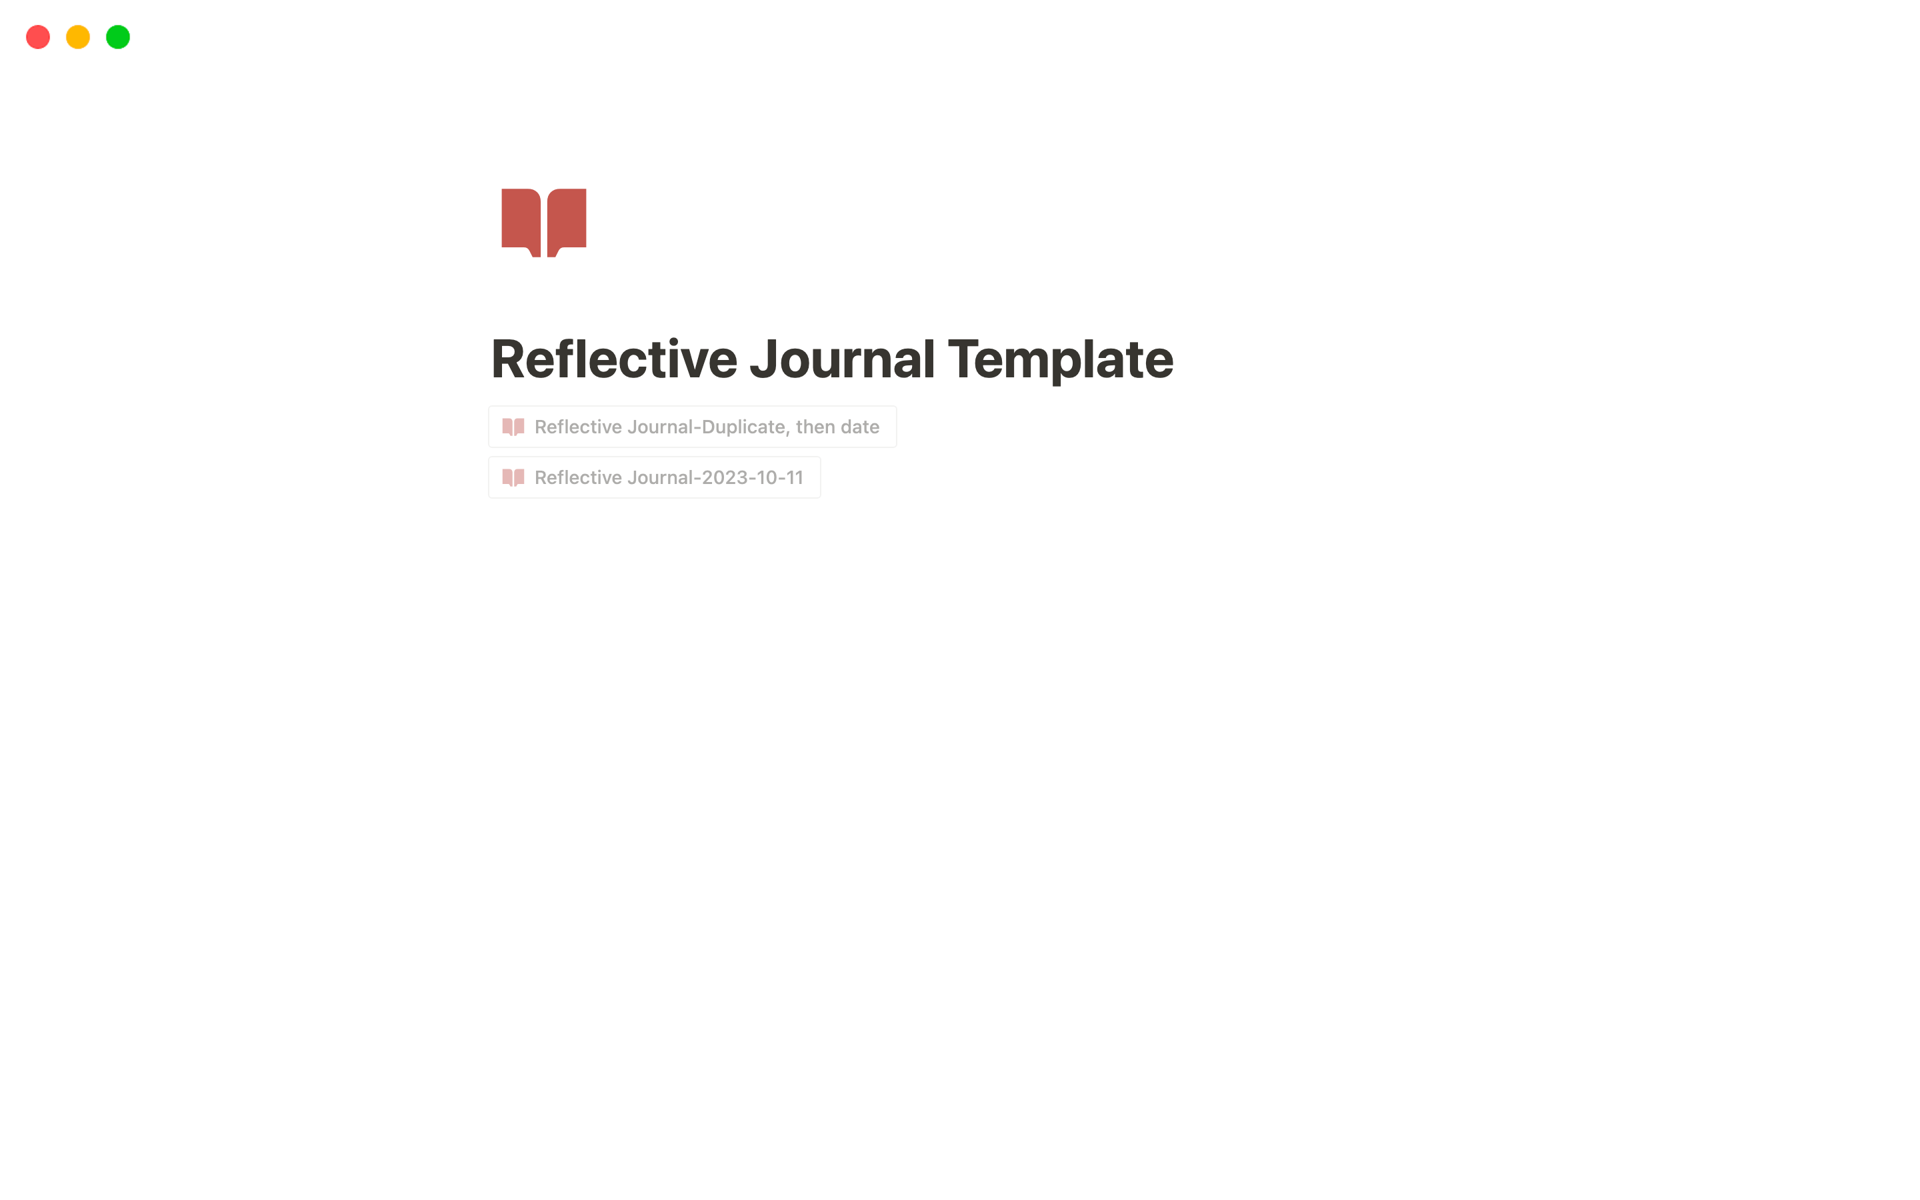 En förhandsgranskning av mallen för Reflective Journal Template